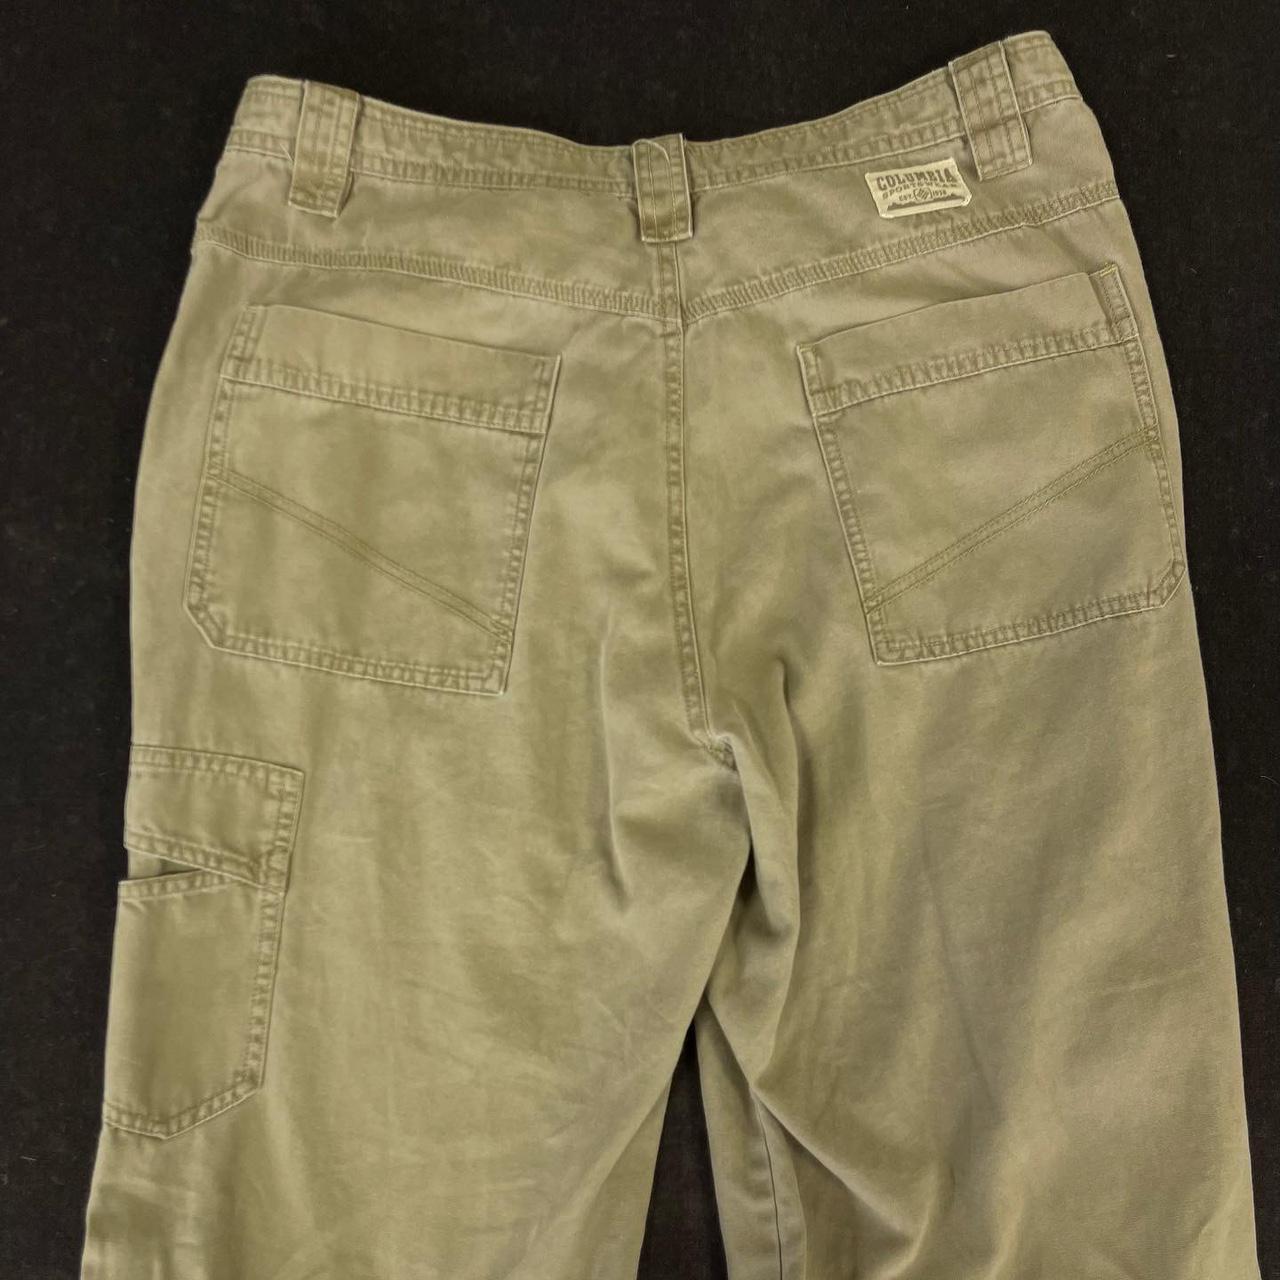 $10 - Colombian Sportswear Cargo Pants... - Depop